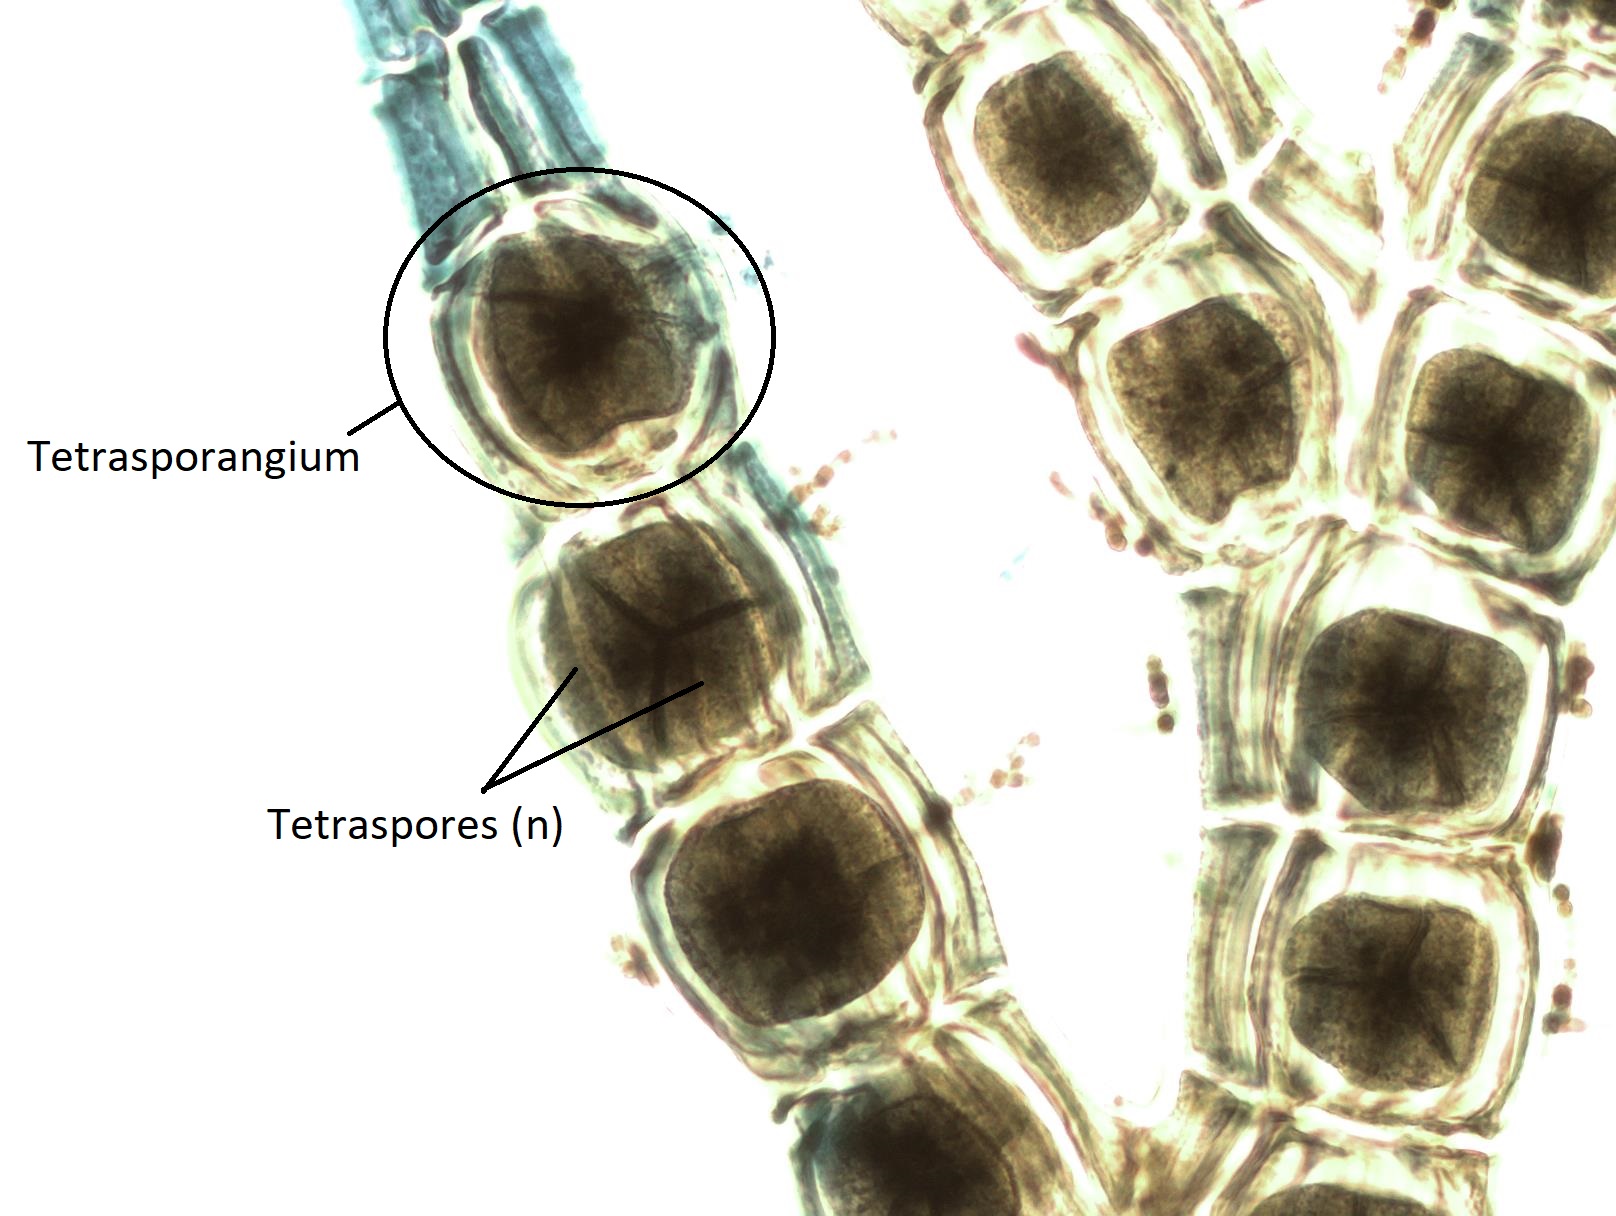 A labeled Polysiphonia tetrasporophyte showing tetrasporangia and tetraspores